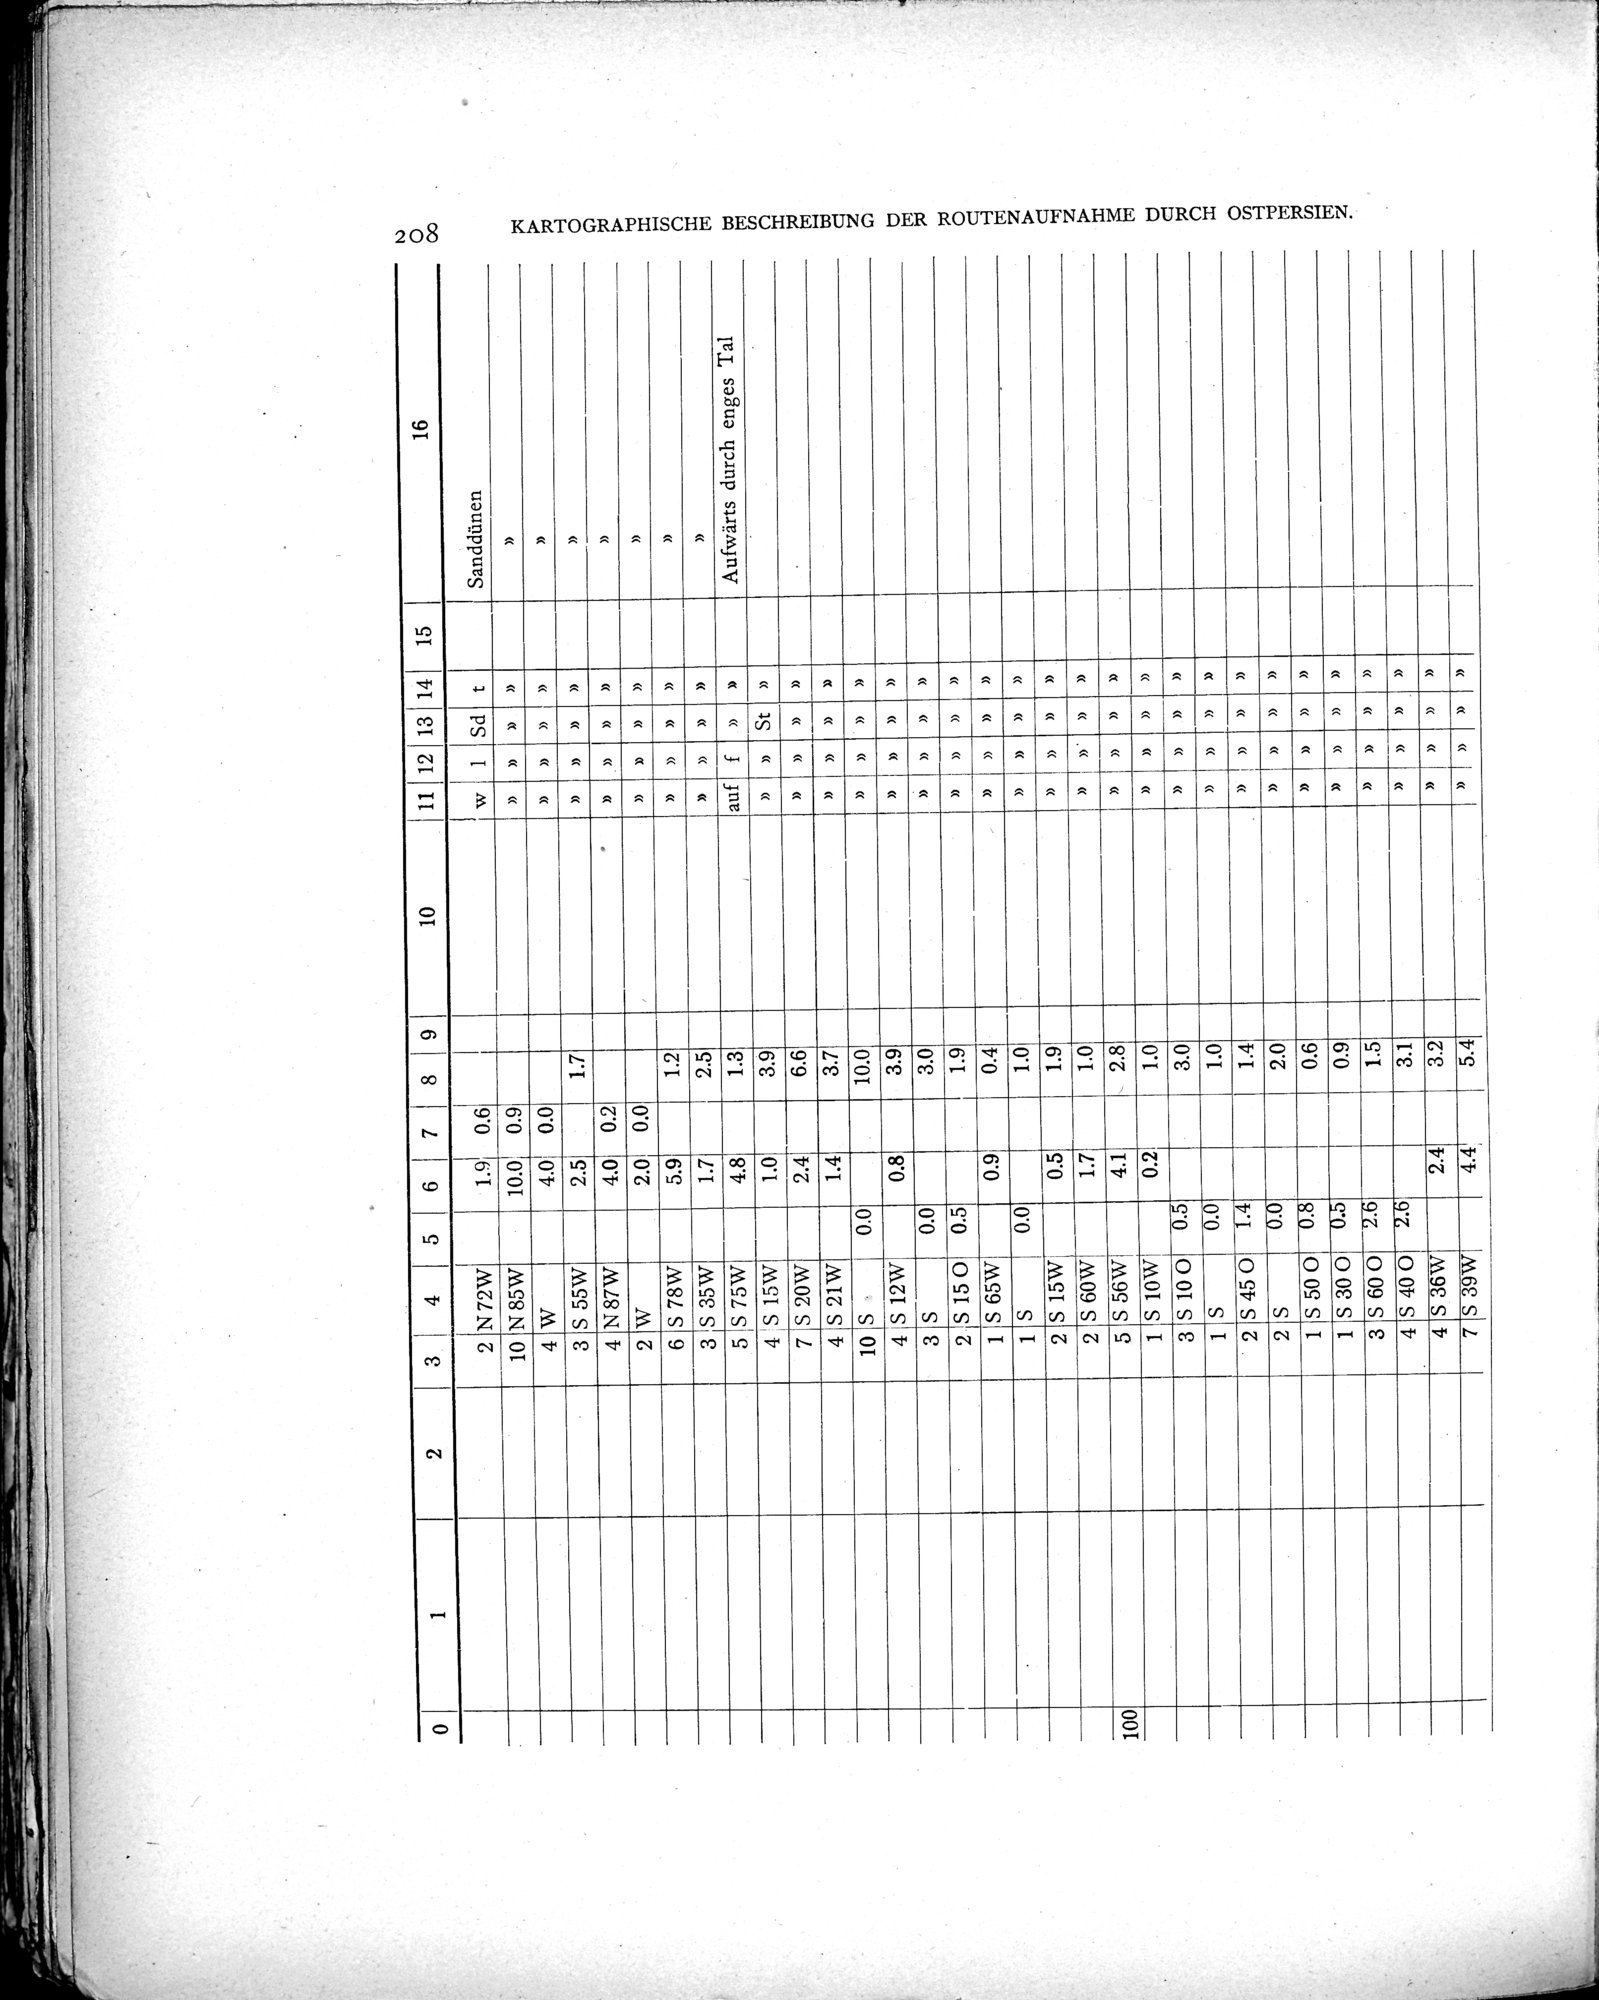 Eine Routenaufnahme durch Ostpersien : vol.2 / Page 278 (Grayscale High Resolution Image)